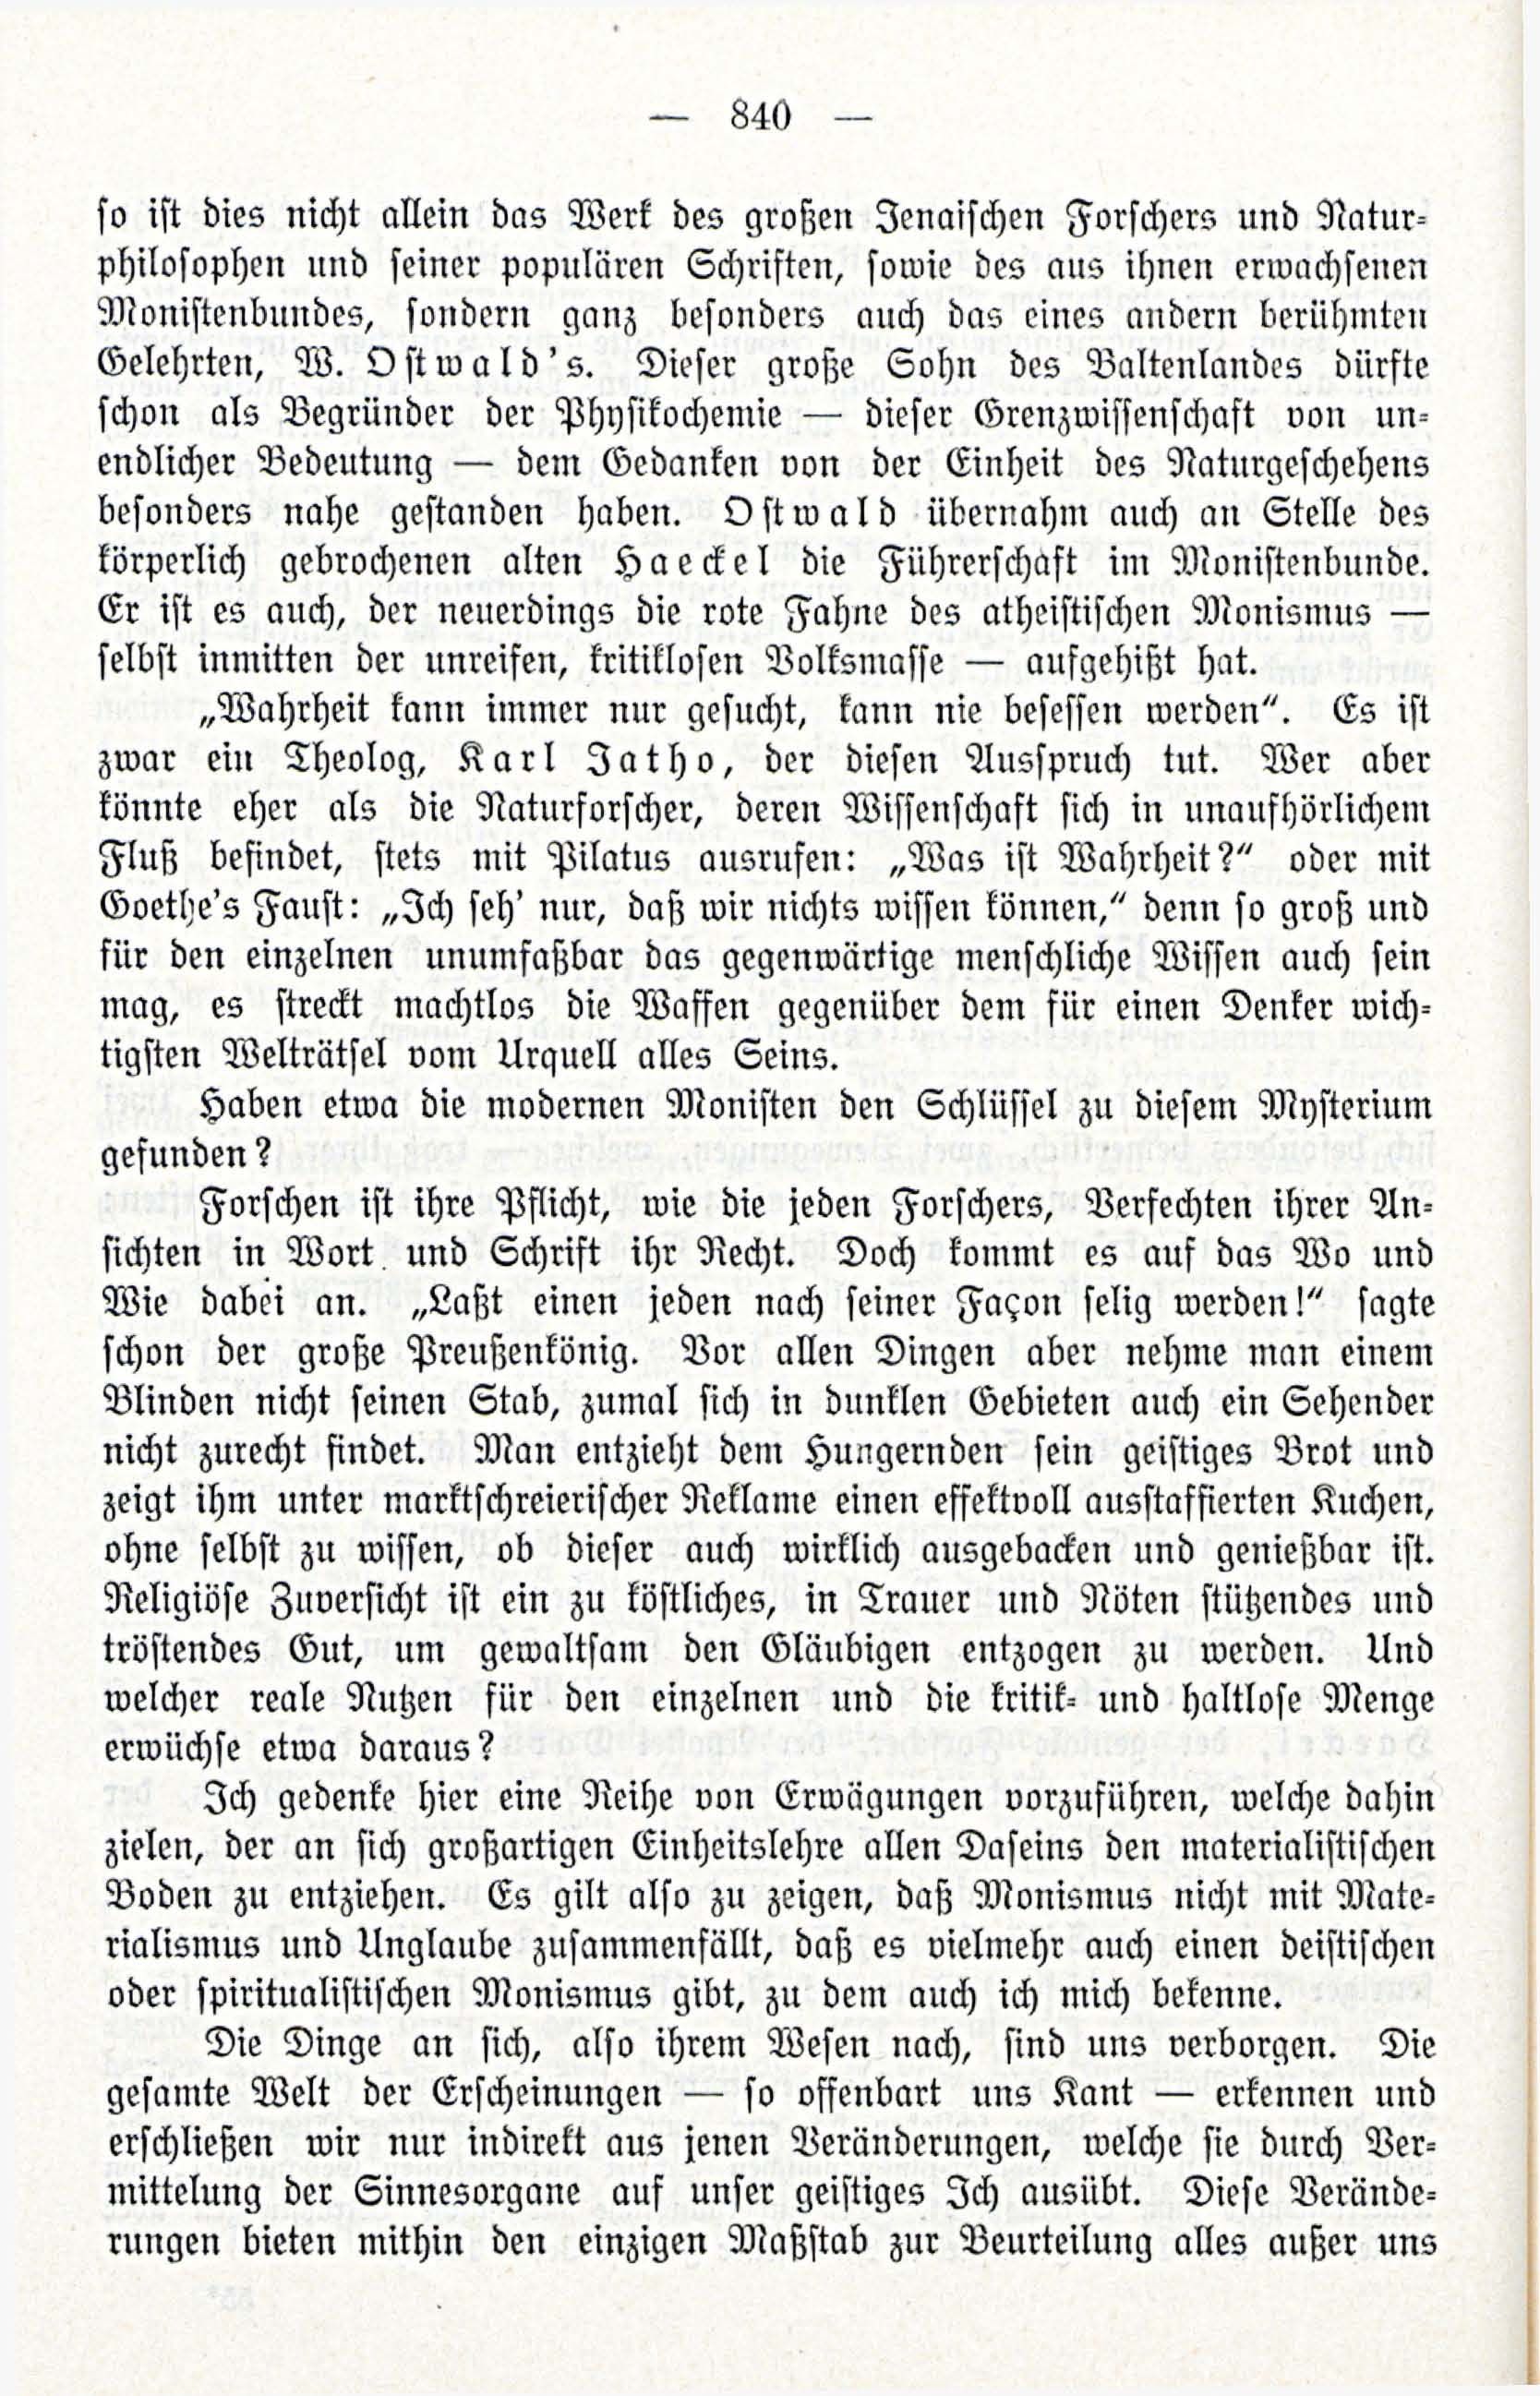 Deutsche Monatsschrift für Russland [3/12] (1914) | 56. (840) Main body of text